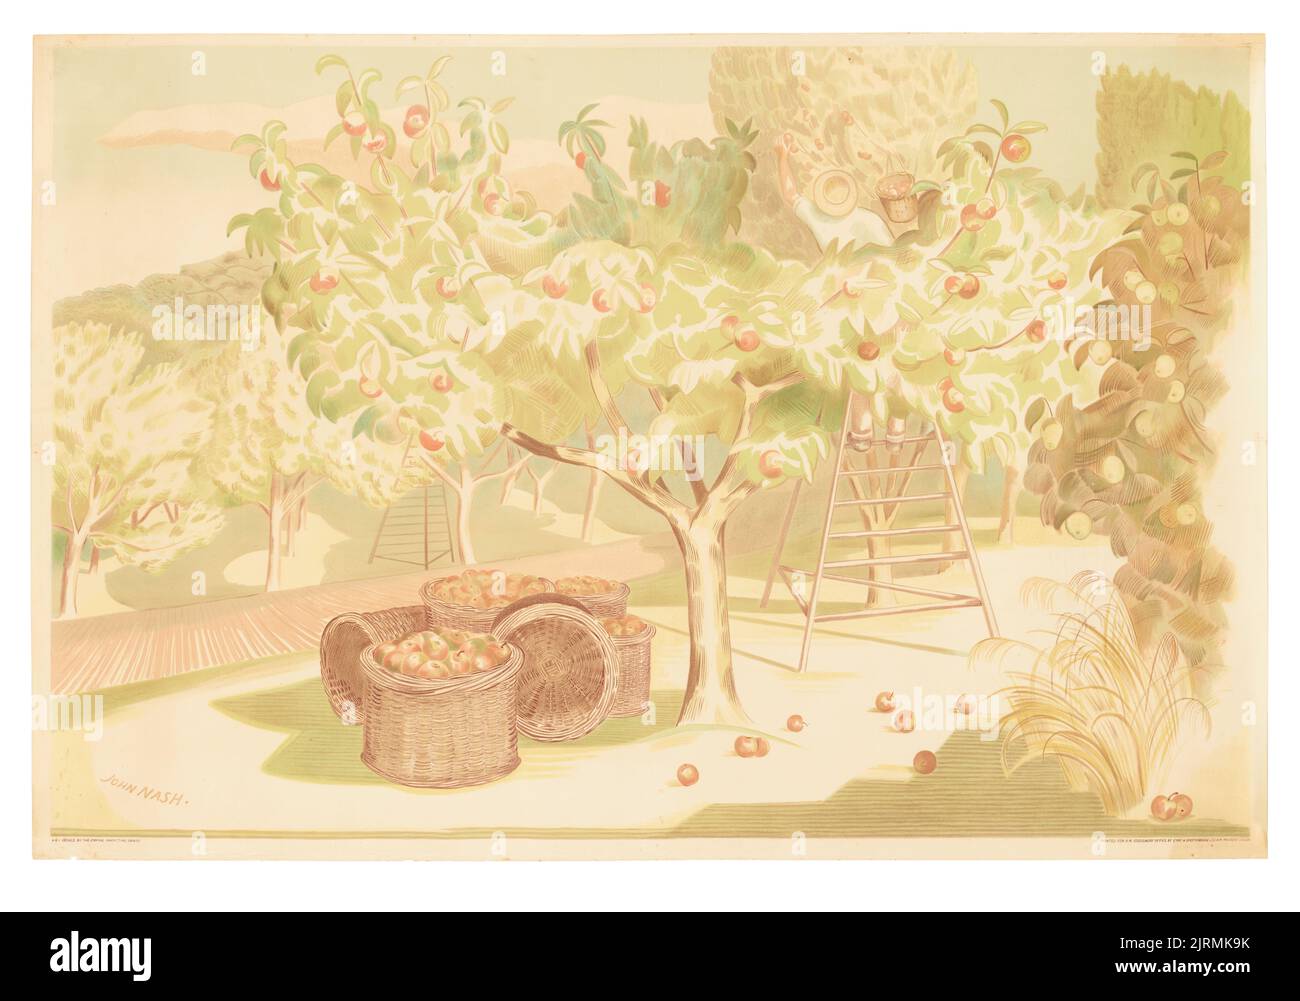 Poster, 'Fruit Gardens and Orchard', 1930, Regno Unito, di John Nash, Eyre & Spottismoode Ltd., H.M. Stationery Office, Empire Marketing Board. Trovato nella collezione, 2012. Foto Stock